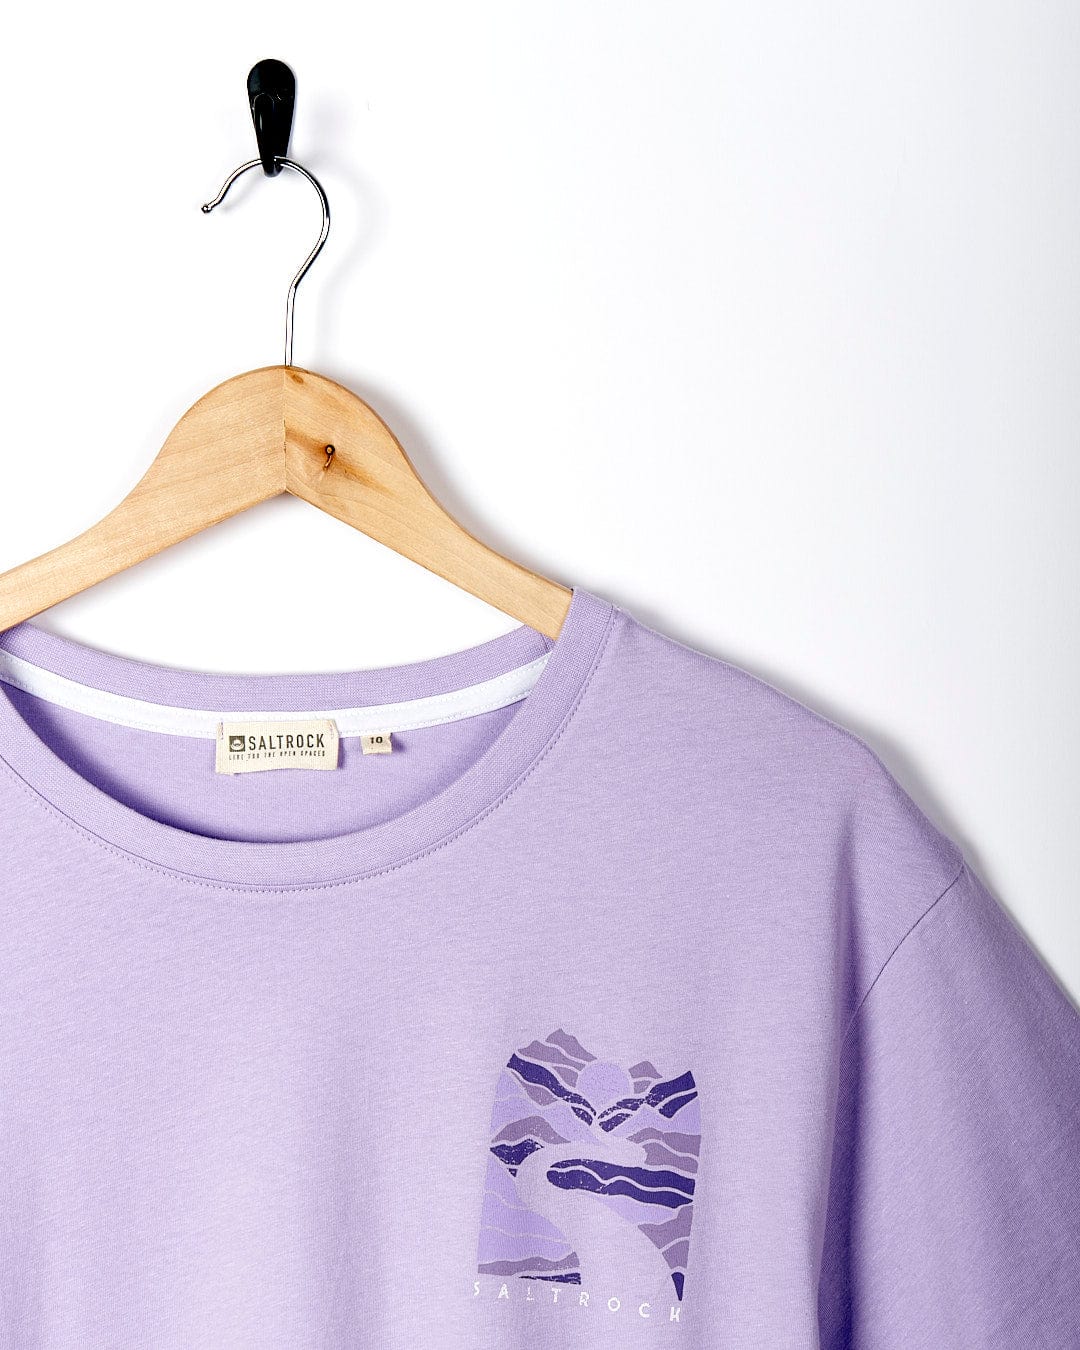 A Saltrock Live Wild - Womens Short Sleeve T-Shirt - Light Purple hanging on a hanger.